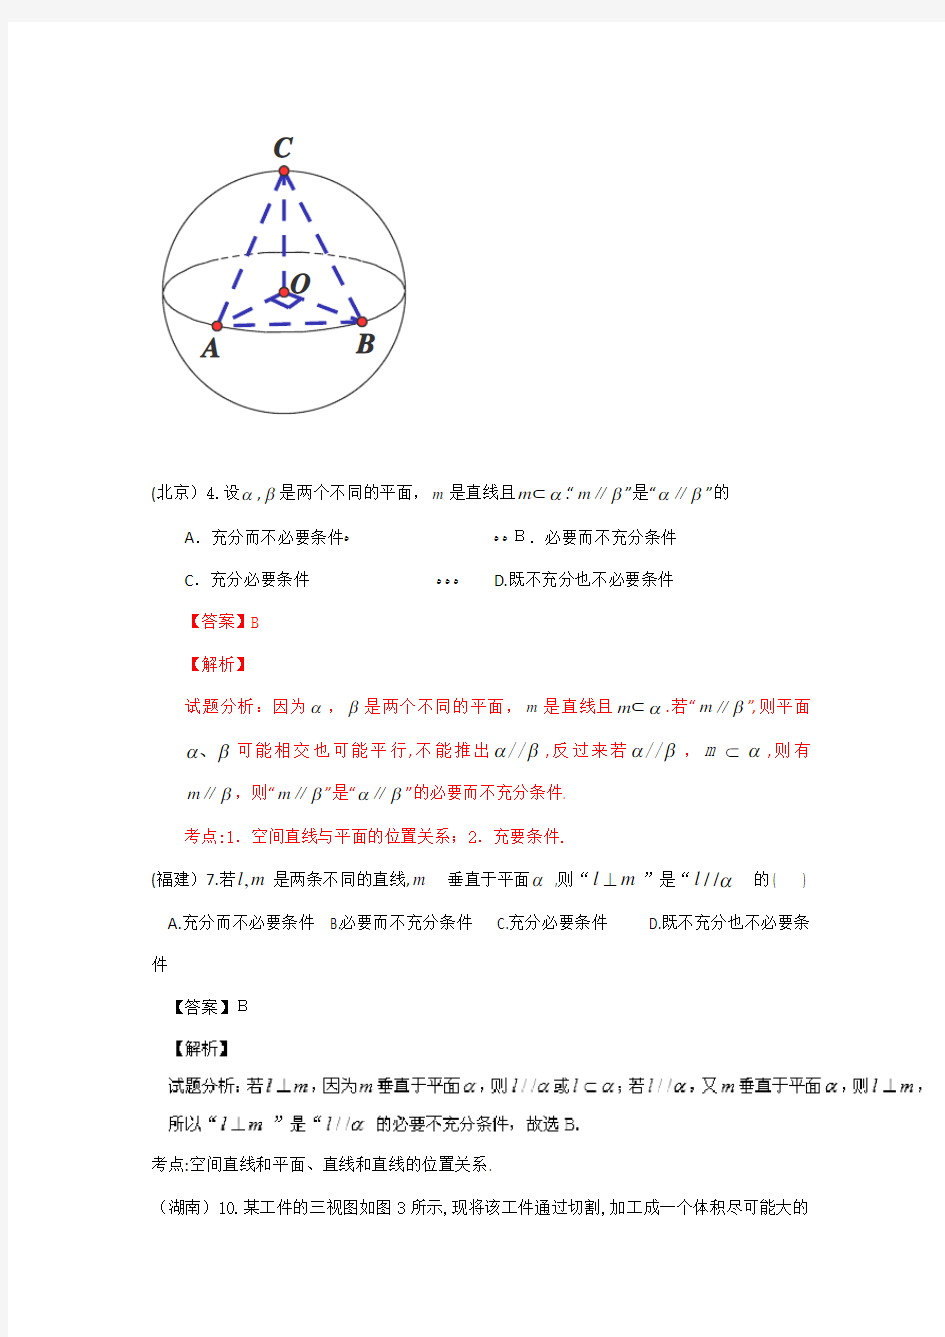 2015年高考理科数学试题汇编(含标准答案)：立体几何-小题